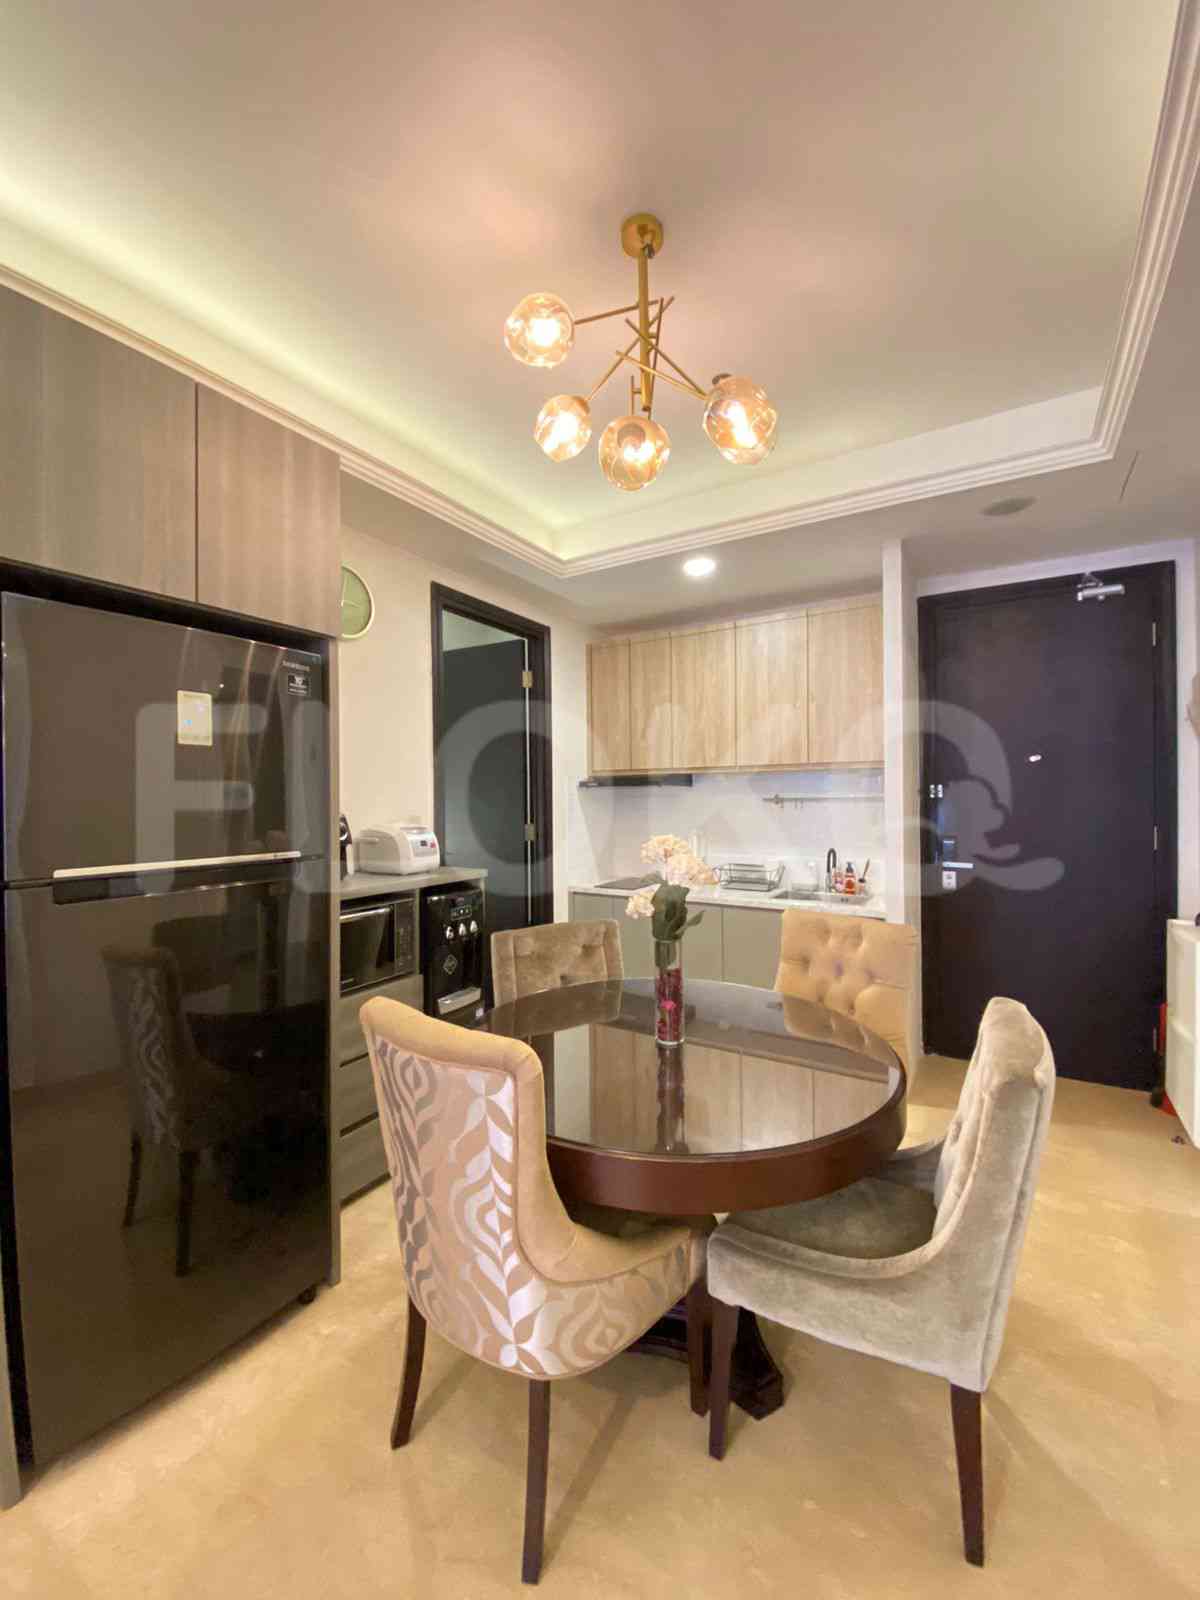 2 Bedroom on 14th Floor for Rent in Sudirman Suites Jakarta - fsu321 6